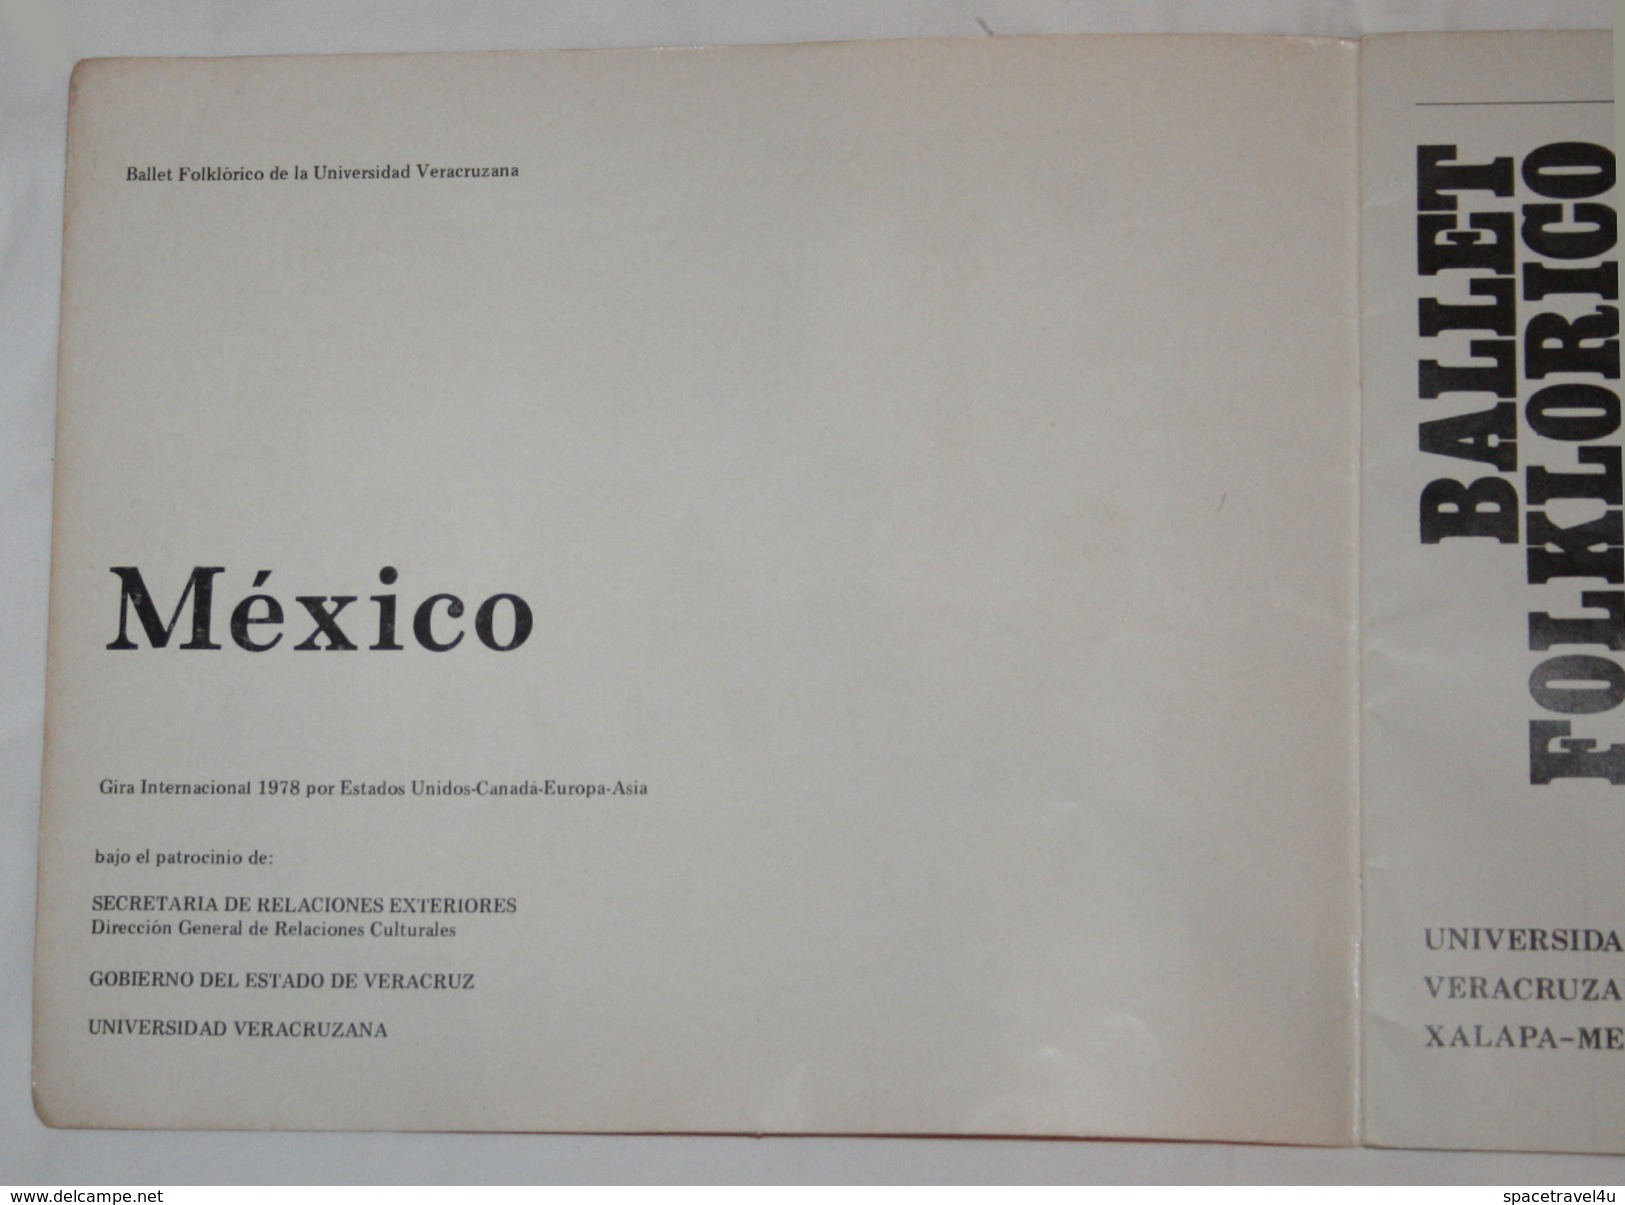 BALLET FOLKLORICO UNIVERSIDAD XALABA MEXICO 1978 - Vintage Ballet BOOKLET Original AUTOGRAPHS 25.1 X 21.2 Cm (VF-23-01) - Theatre